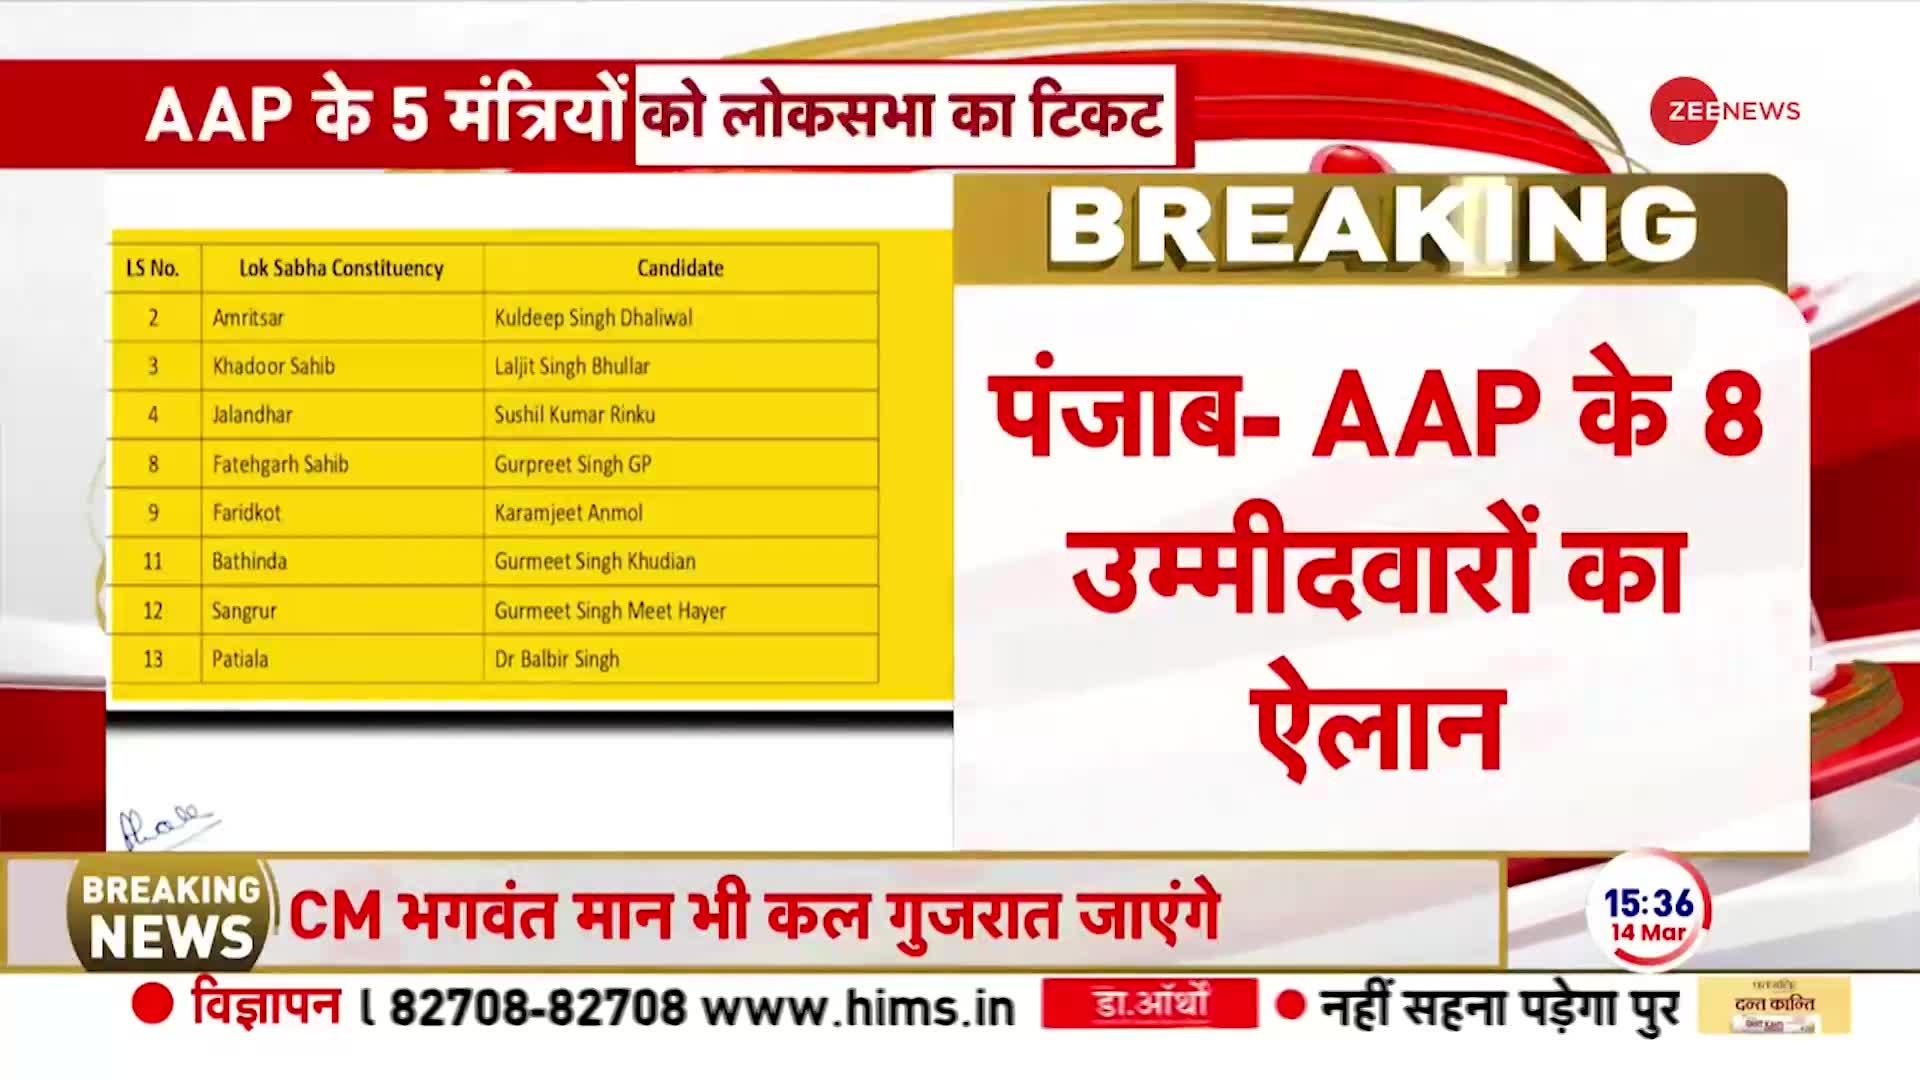 AAP 1st Candidate List: आम आदमी पार्टी की पहली लिस्ट आ गई